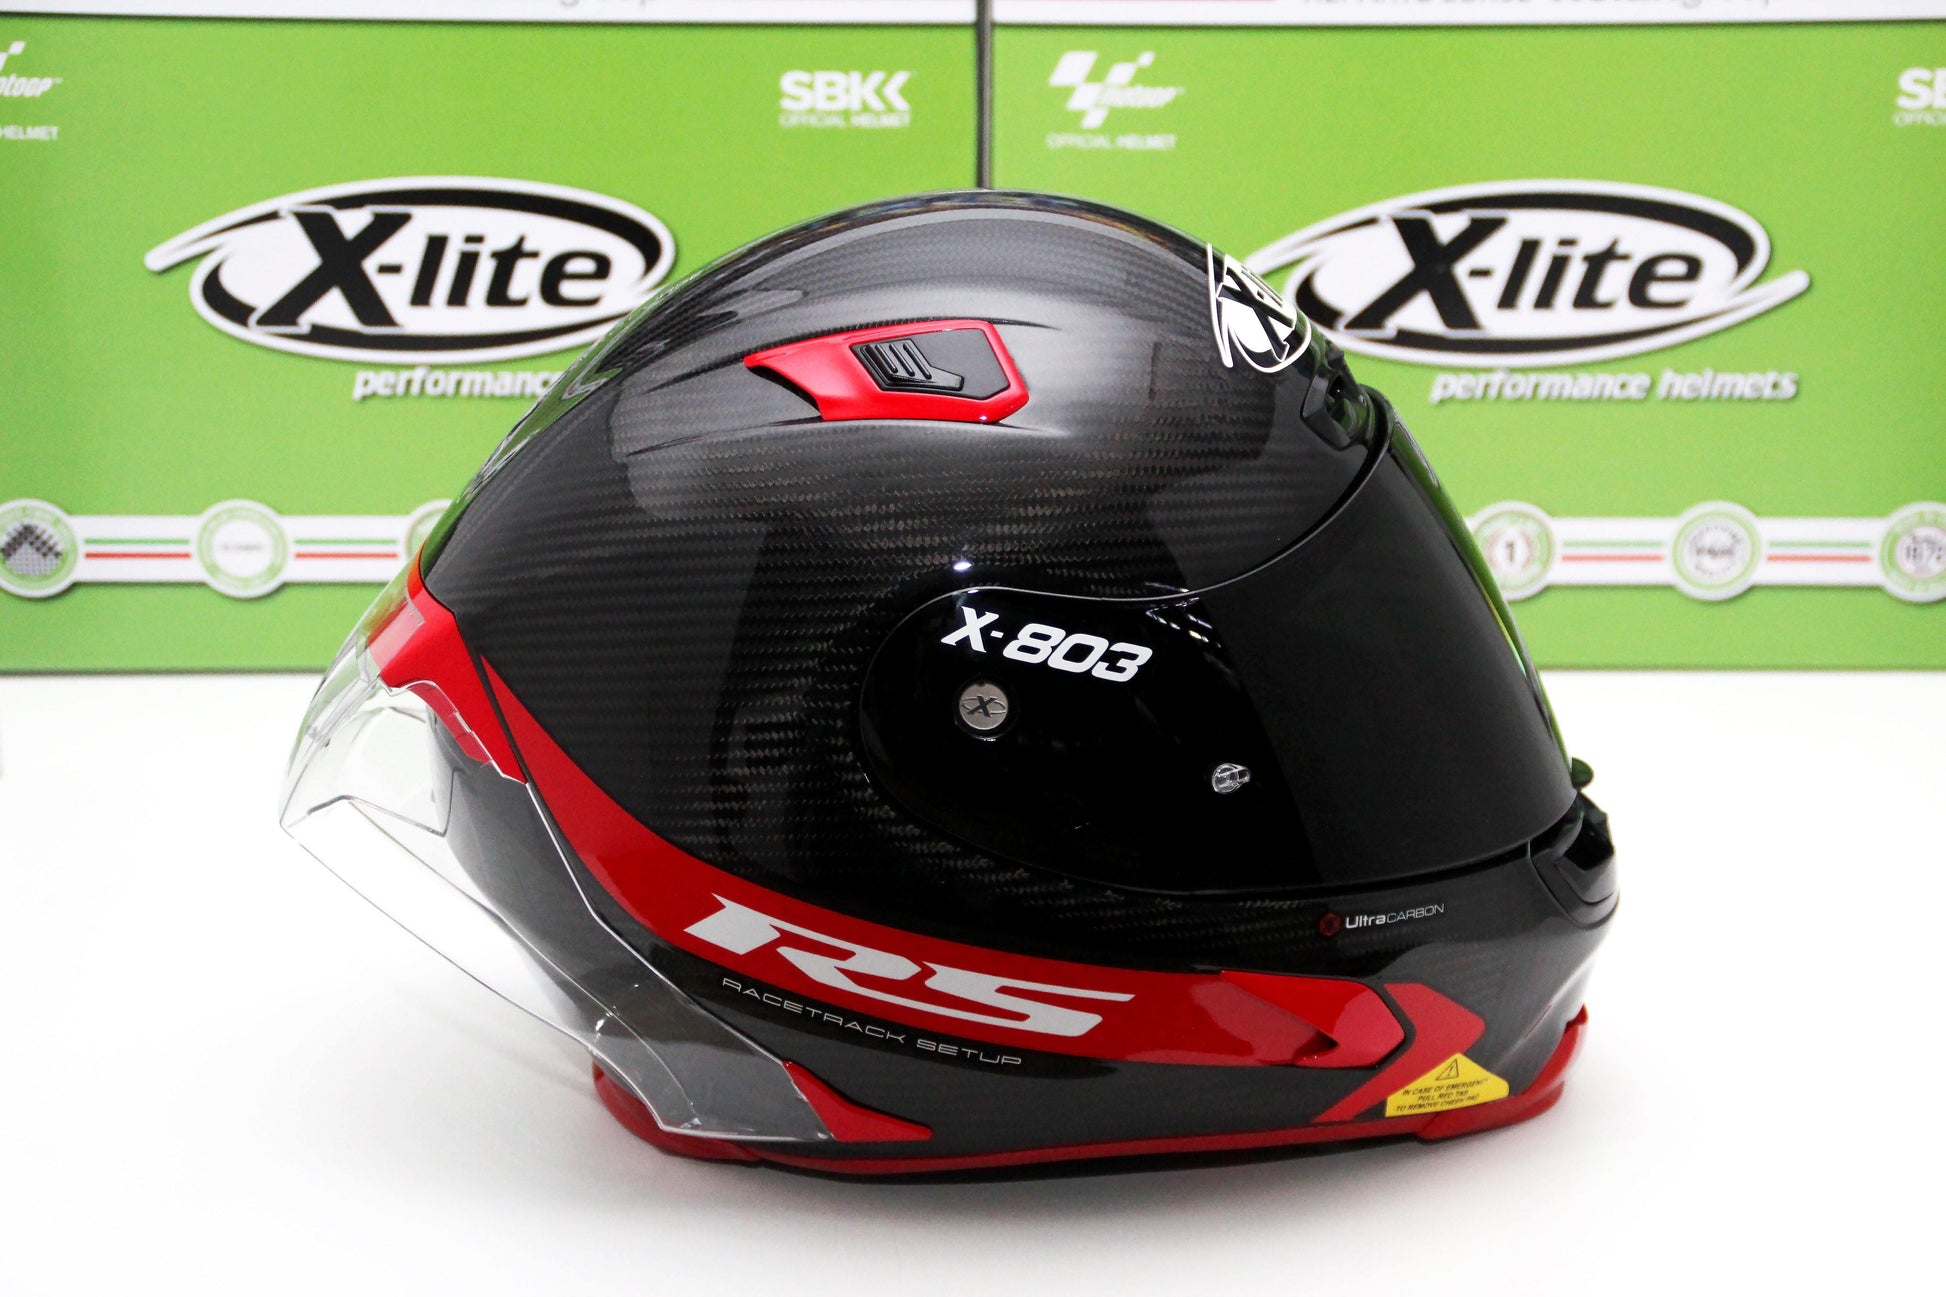 X-Lite X-803 RS Ultra Carbon Hot Lap (13 Carbon) - Durian Bikers